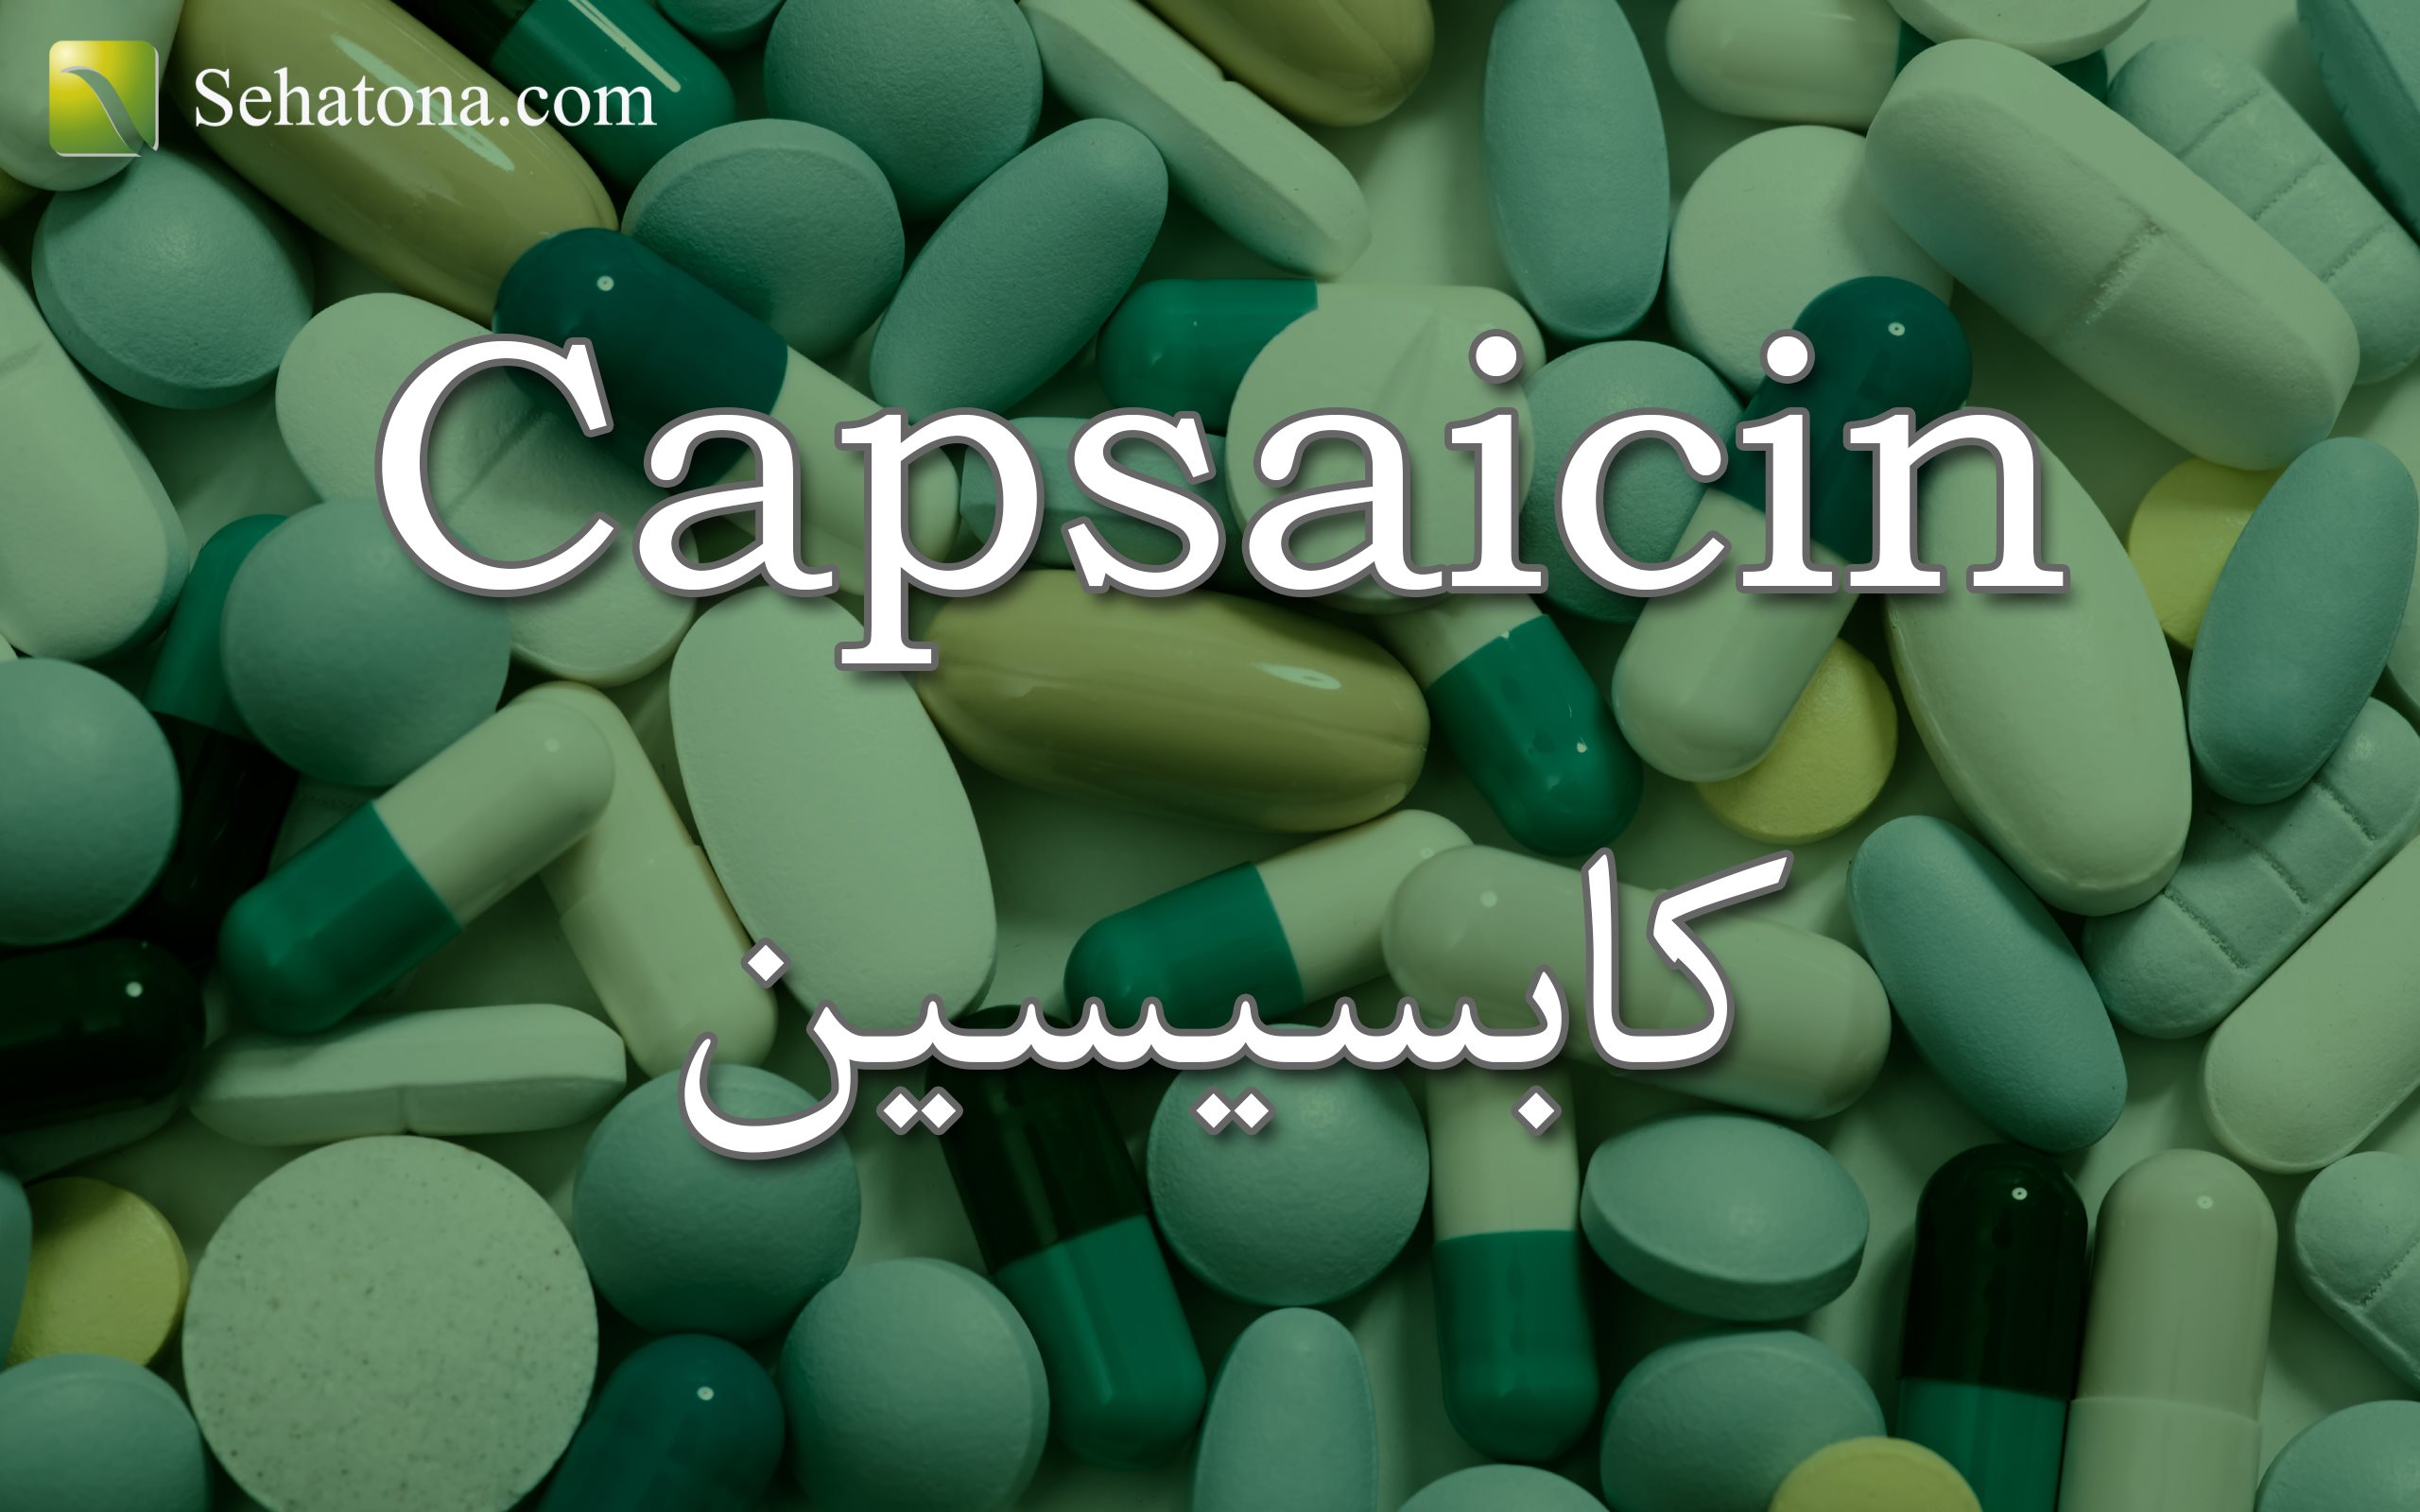 علاج كابسيسين Capsaicin لتخفيف الالام